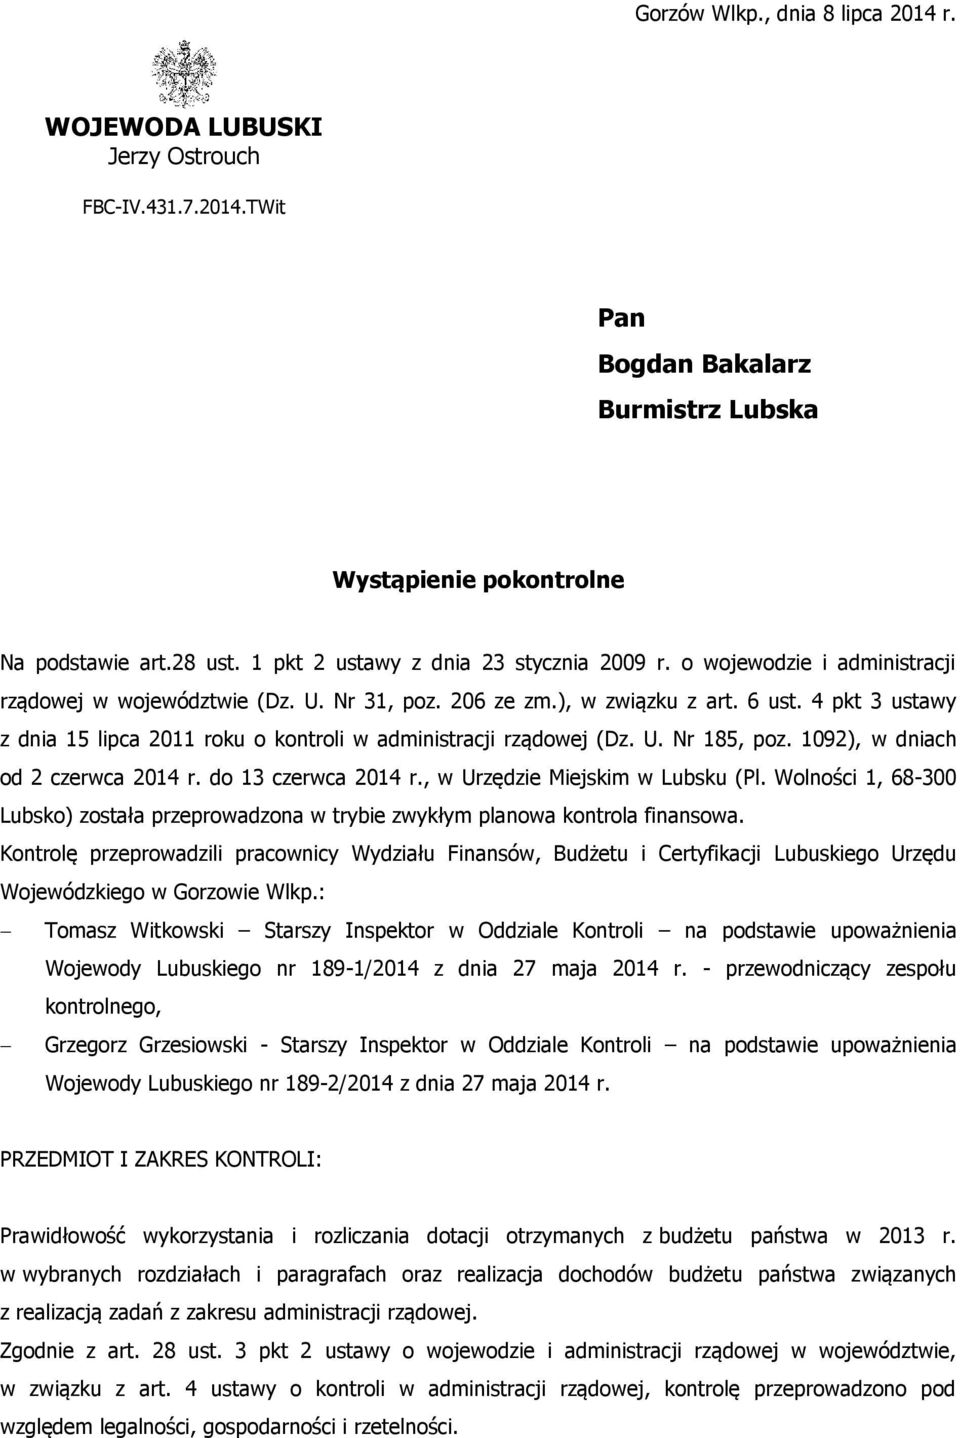 4 pkt 3 ustawy z dnia 15 lipca 2011 roku o kontroli w administracji rządowej (Dz. U. Nr 185, poz. 1092), w dniach od 2 czerwca 2014 r. do 13 czerwca 2014 r., w Urzędzie Miejskim w Lubsku (Pl.